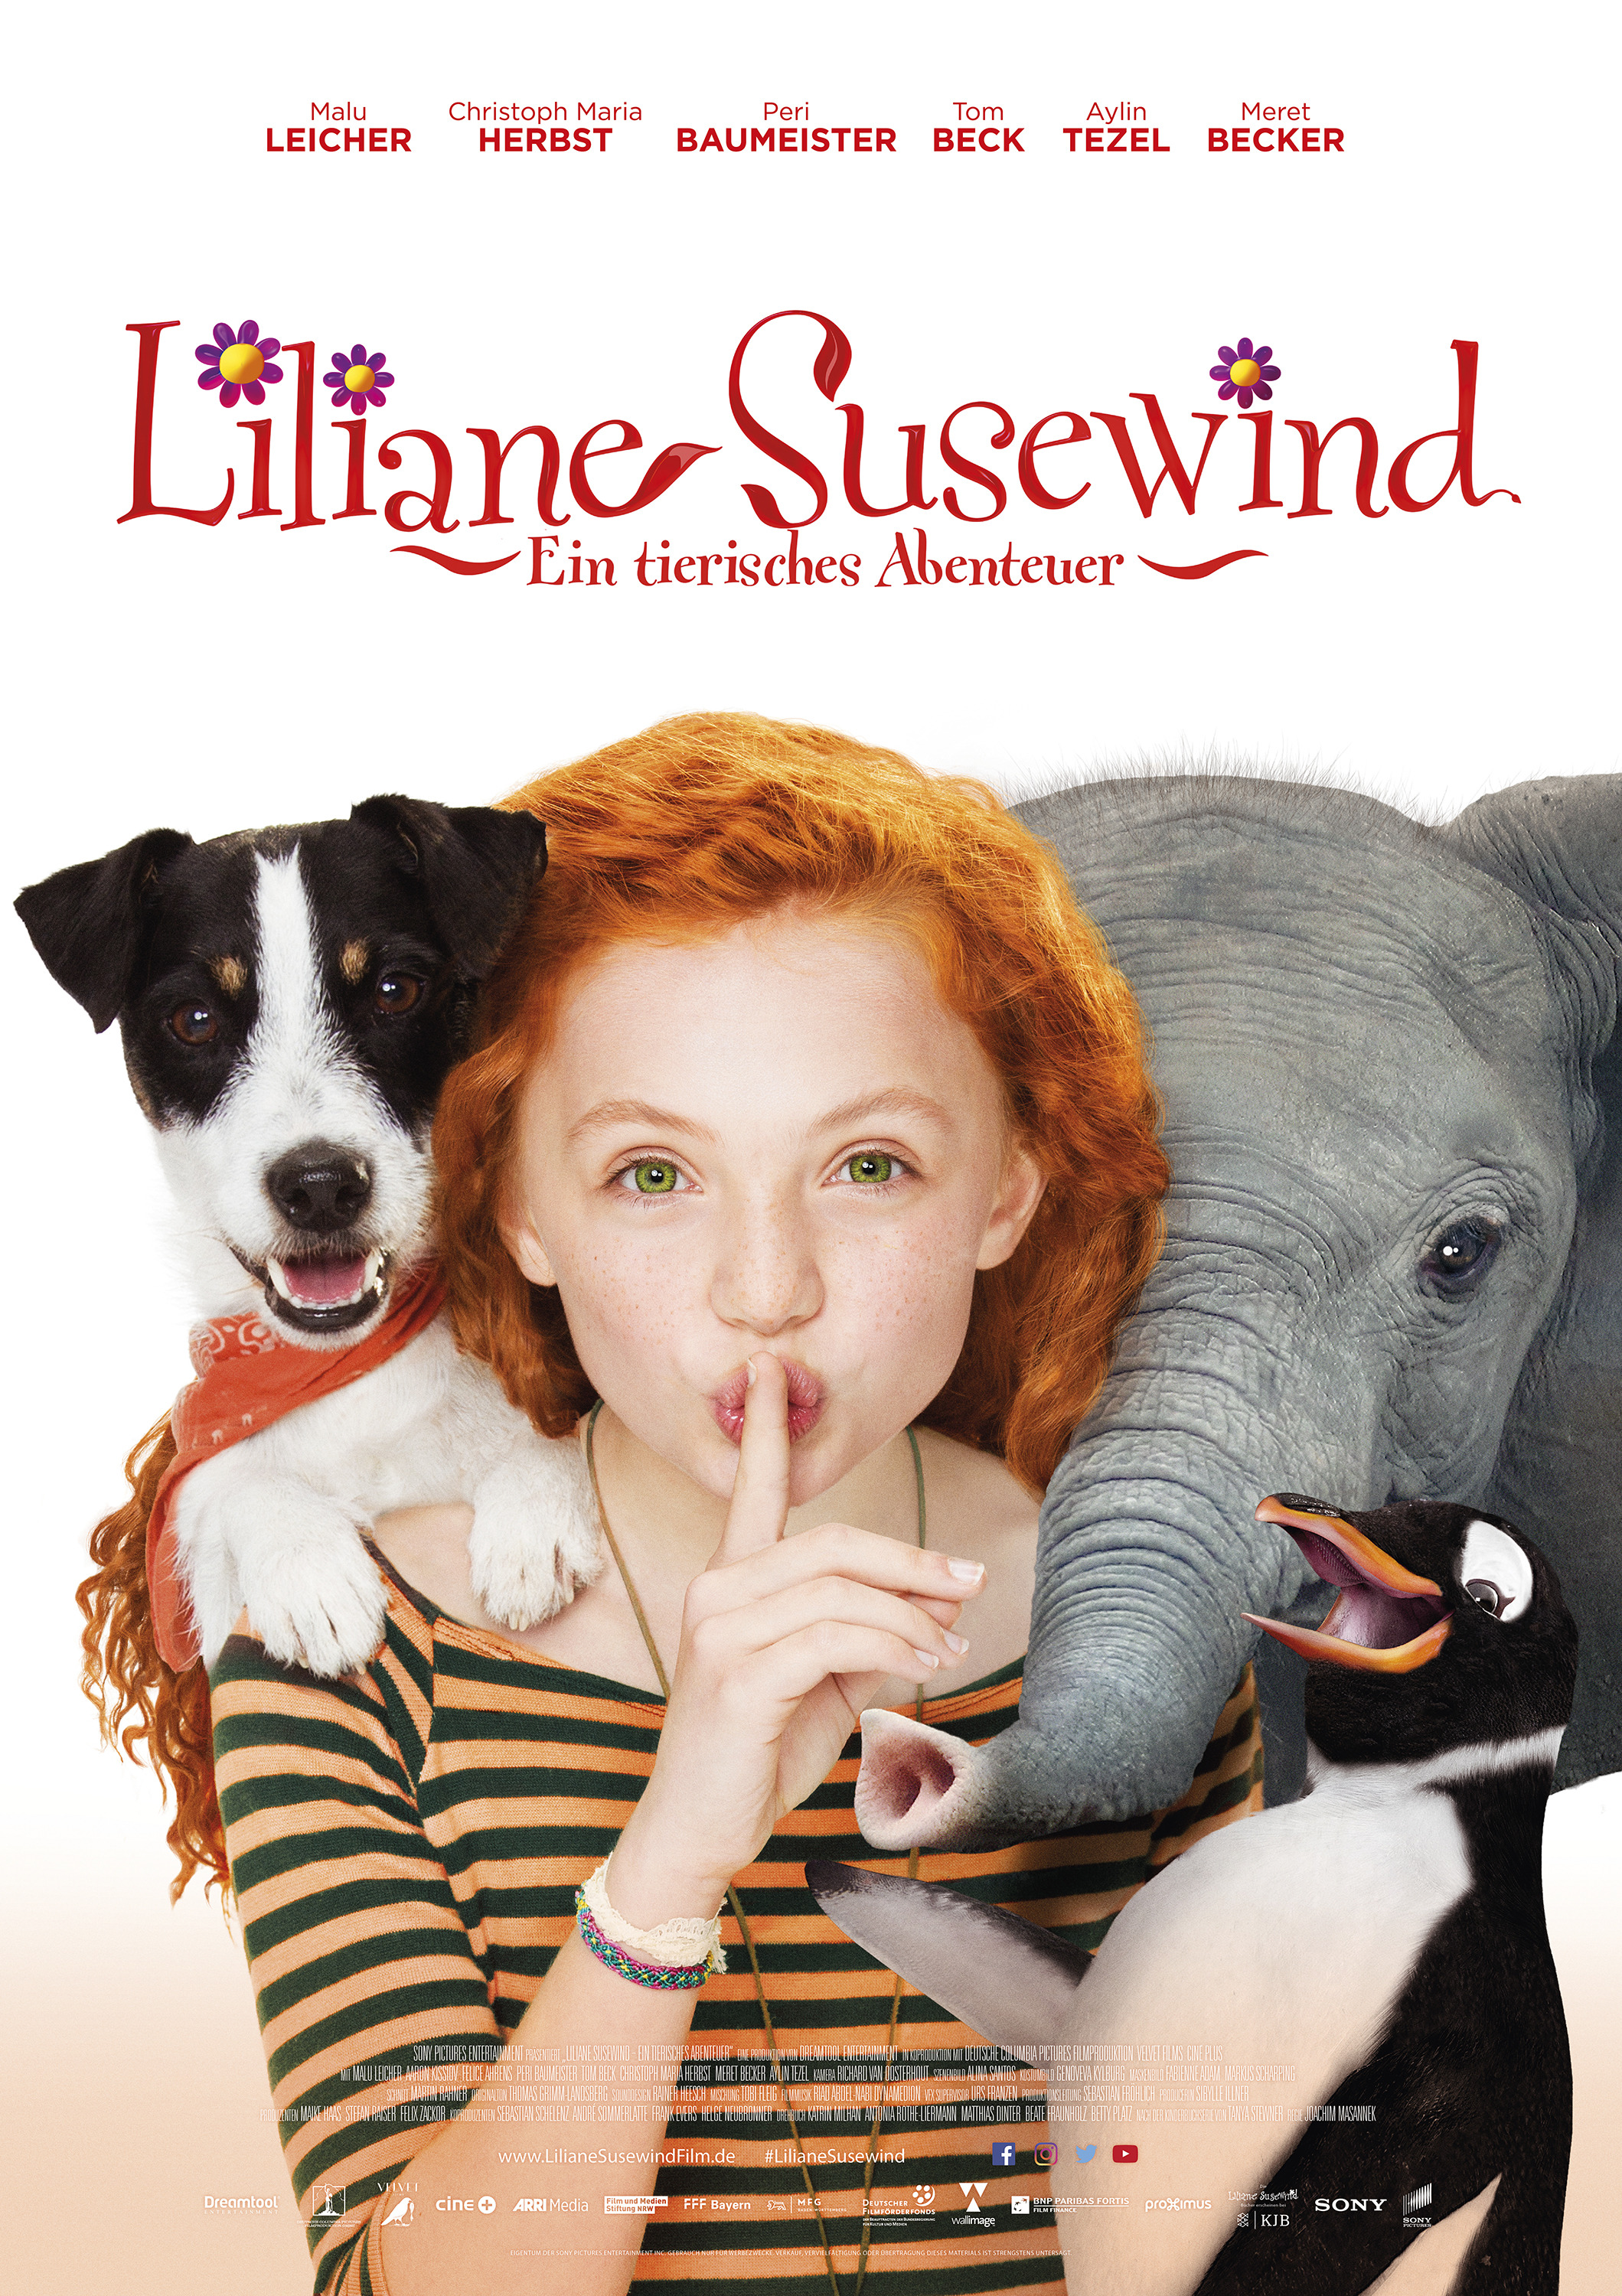 Mega Sized Movie Poster Image for Liliane Susewind - Ein tierisches Abenteuer 